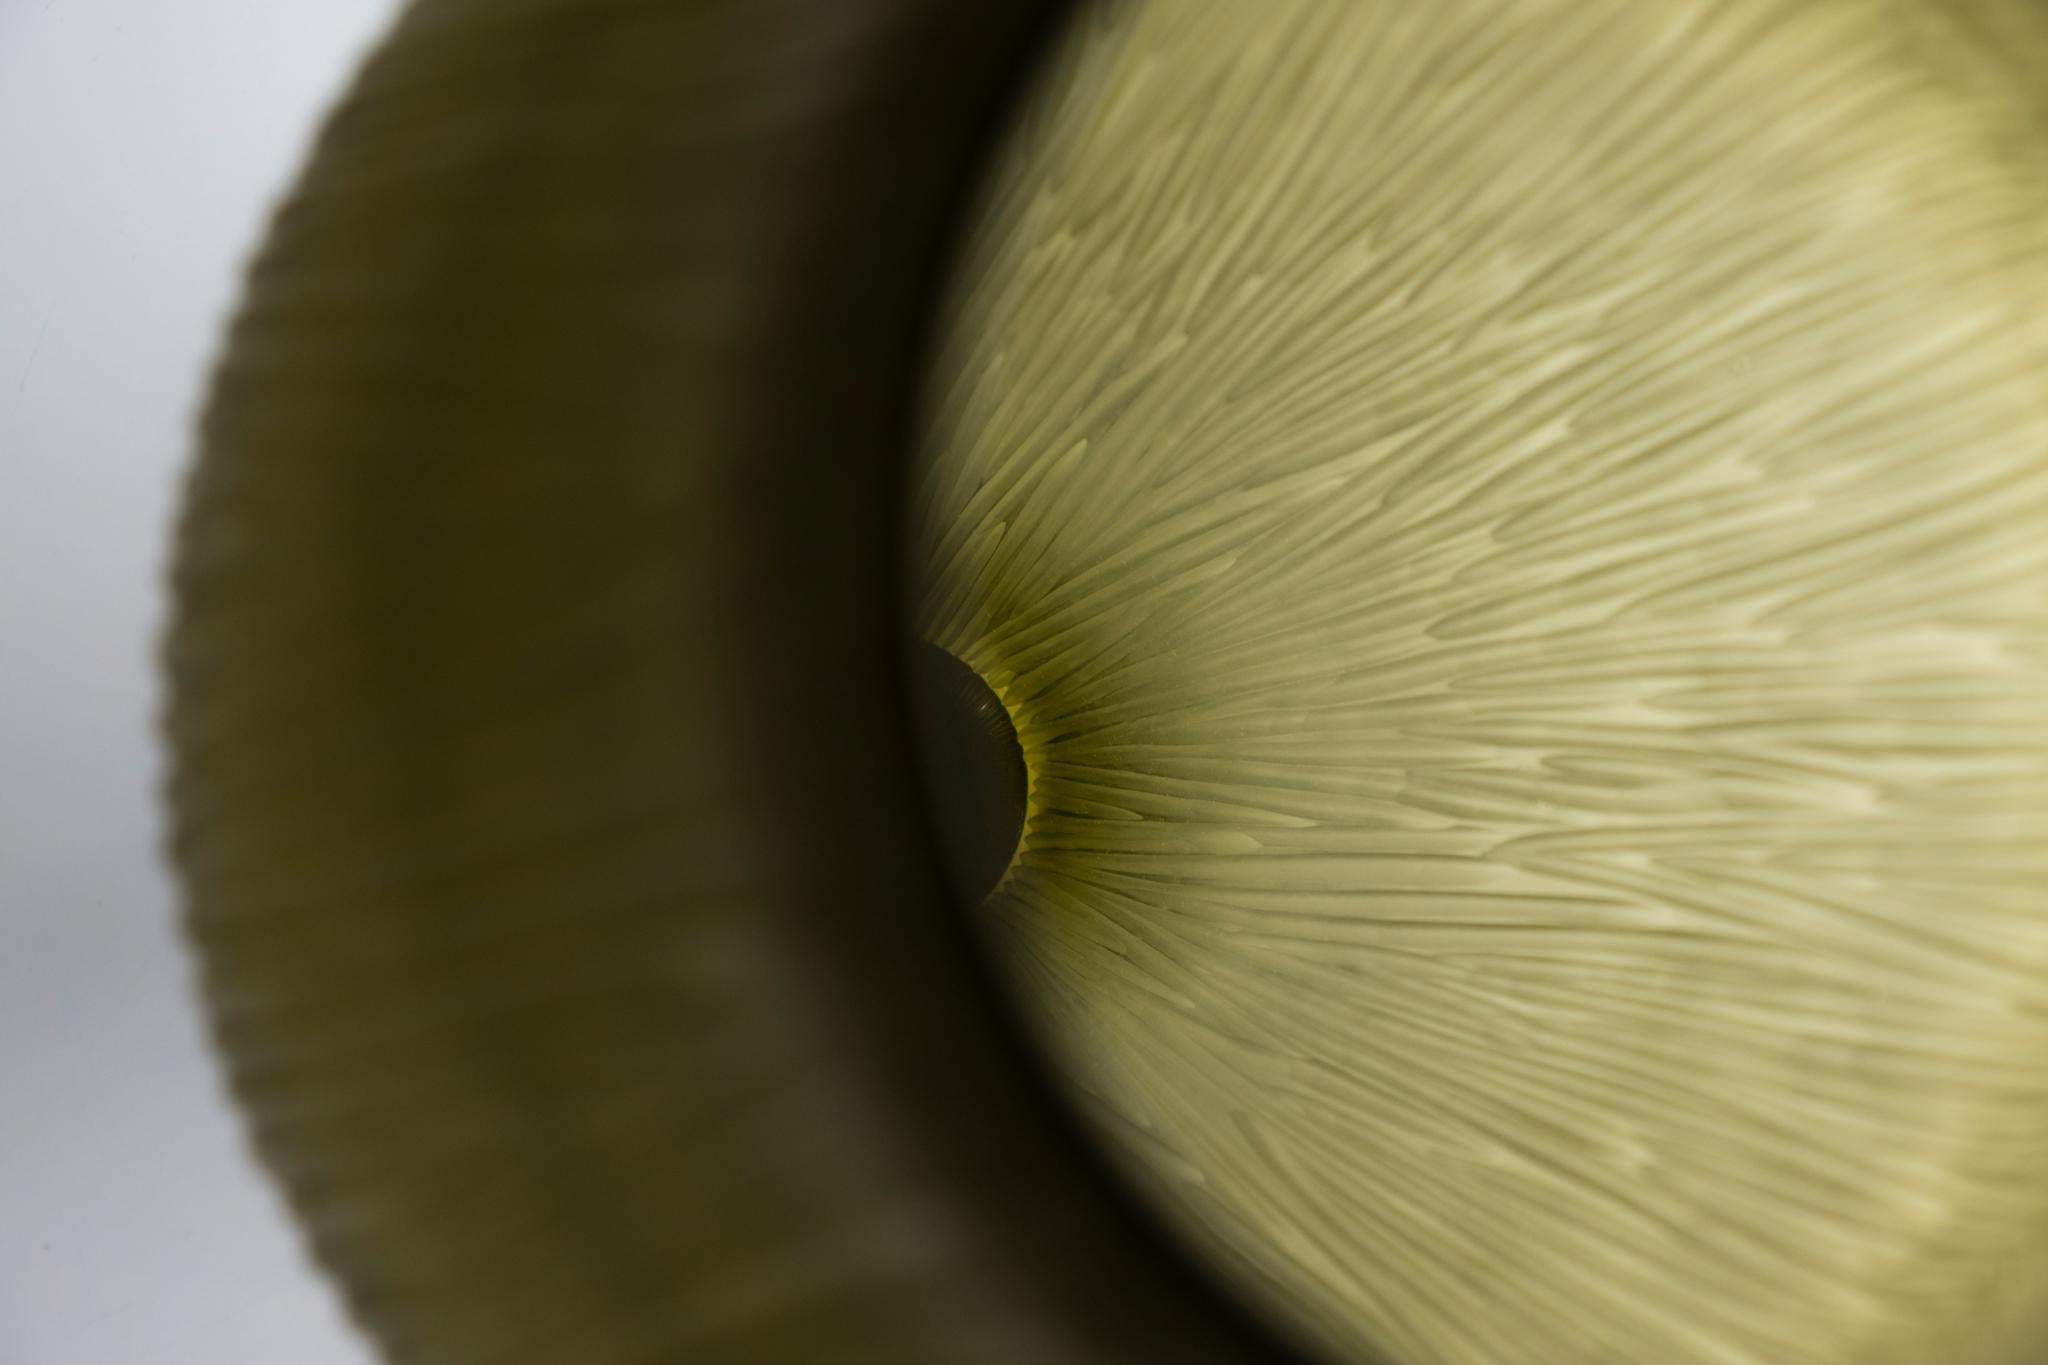 Puparìn est un vase de la collection Laguna conçu par Ludovica+Roberto Palomba pour Purho au printemps 2022.
Mince, élancé et marqué par une épaisse base en verre transparent qui semble faire flotter la couleur à l'intérieur du vase, Puparìn - dont